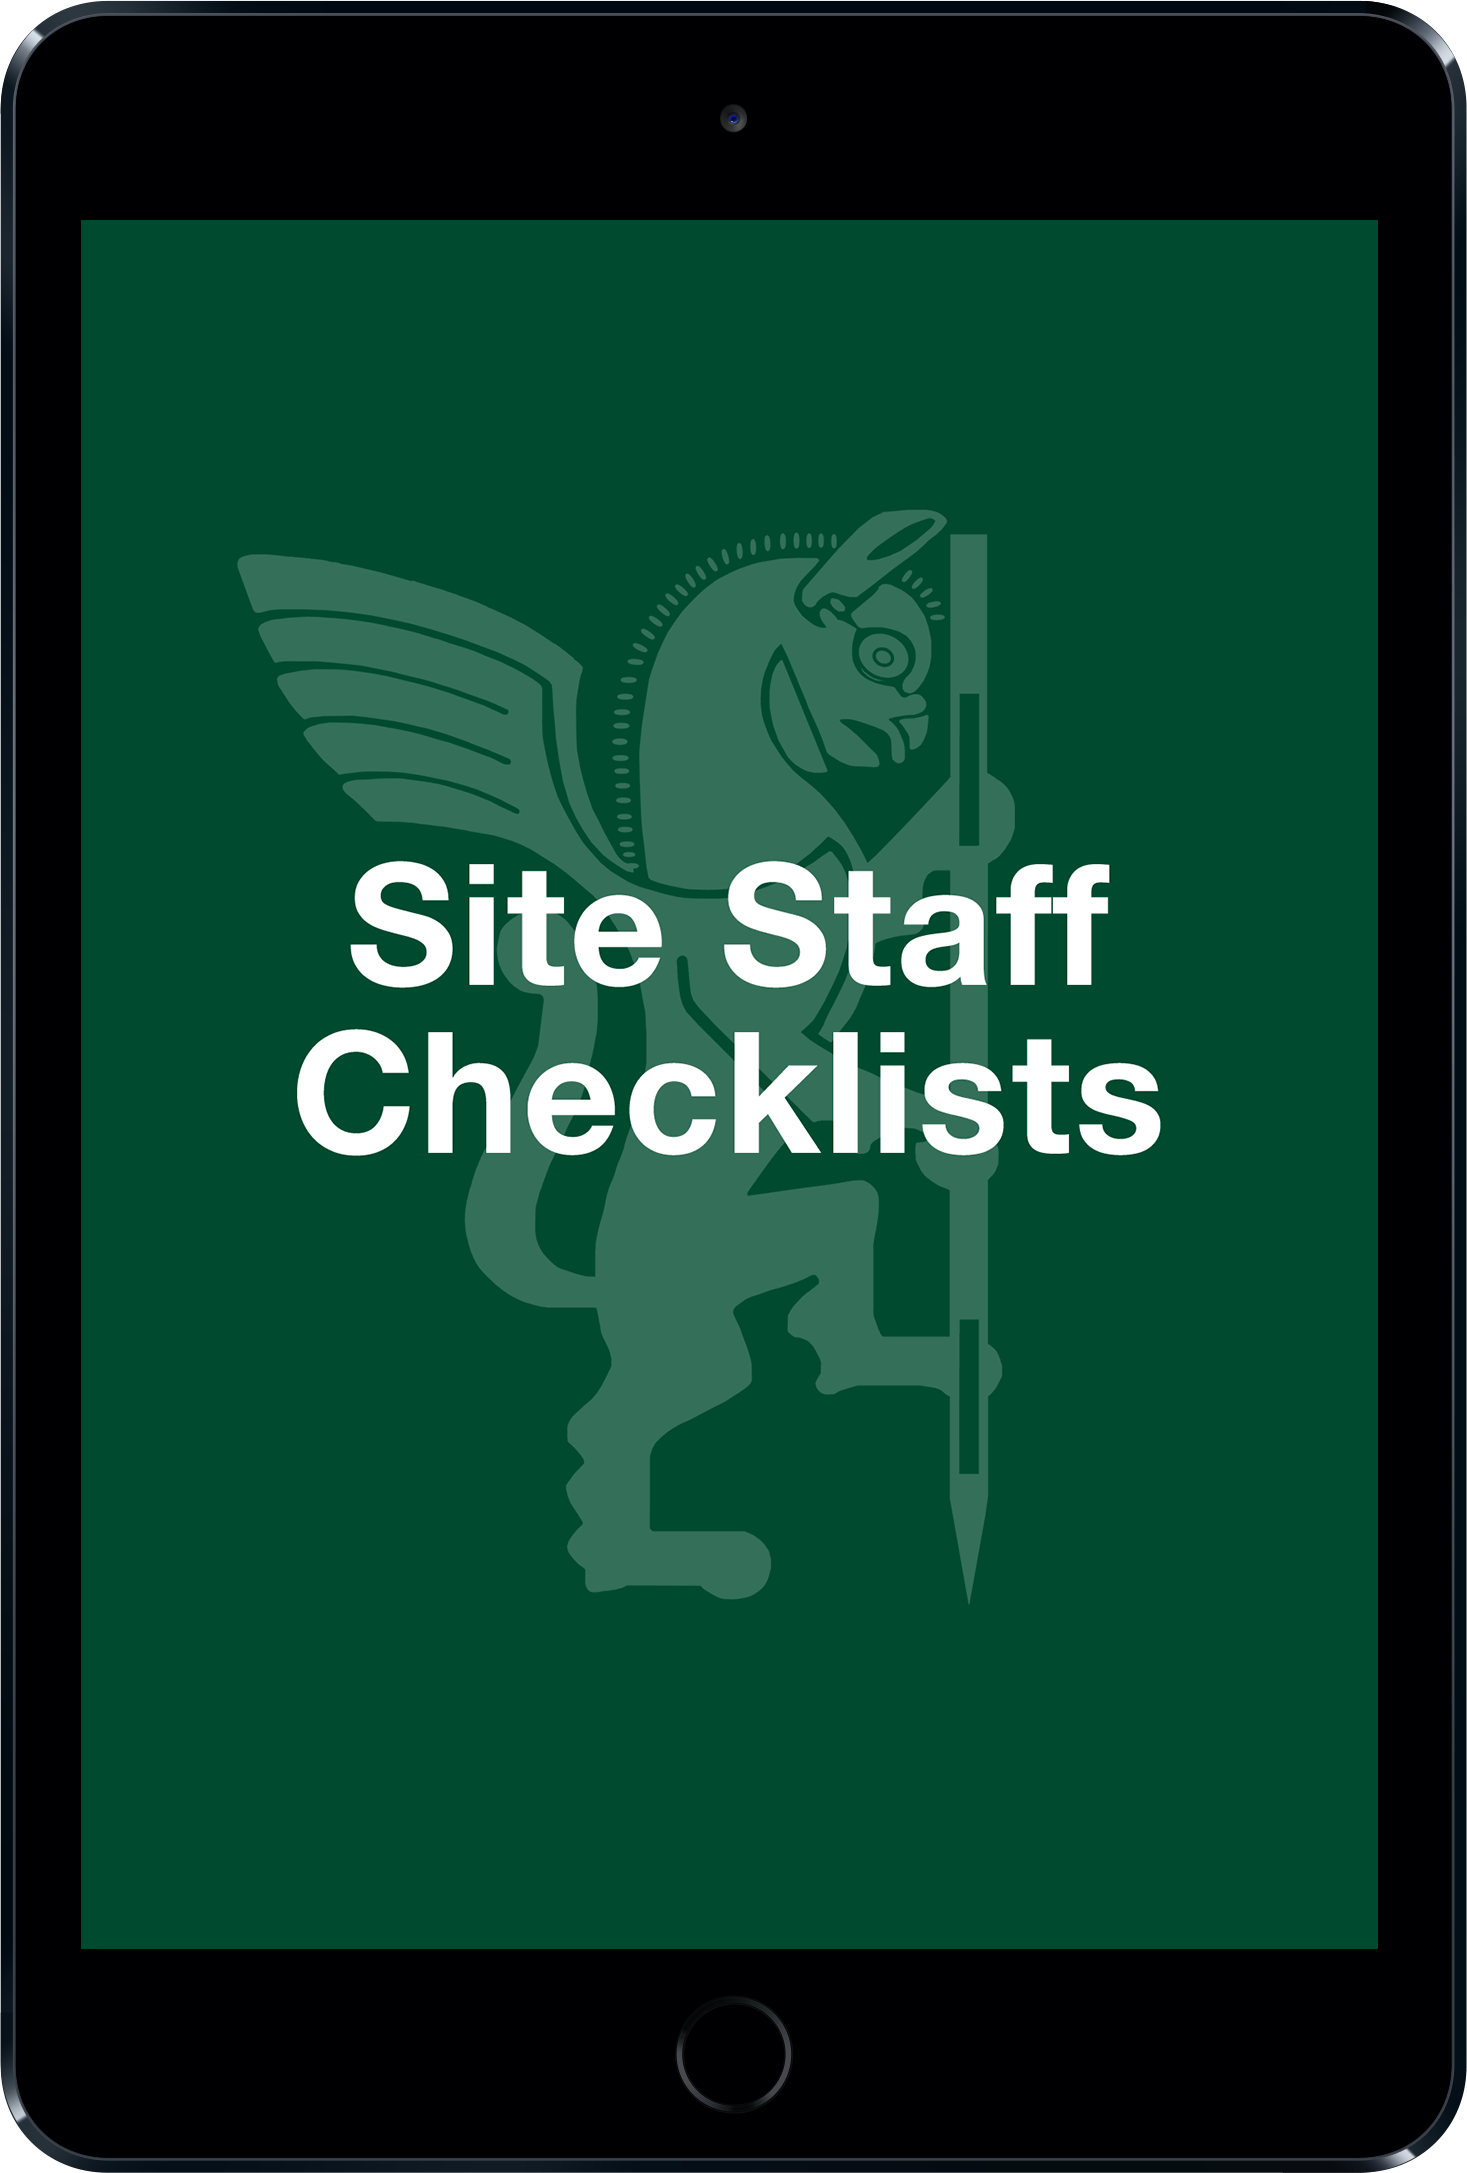 Site staff checklists 0cdc79f9d167638f7a66d21cabb68889c5a0d670ff3e253223016cab1ed72eb5